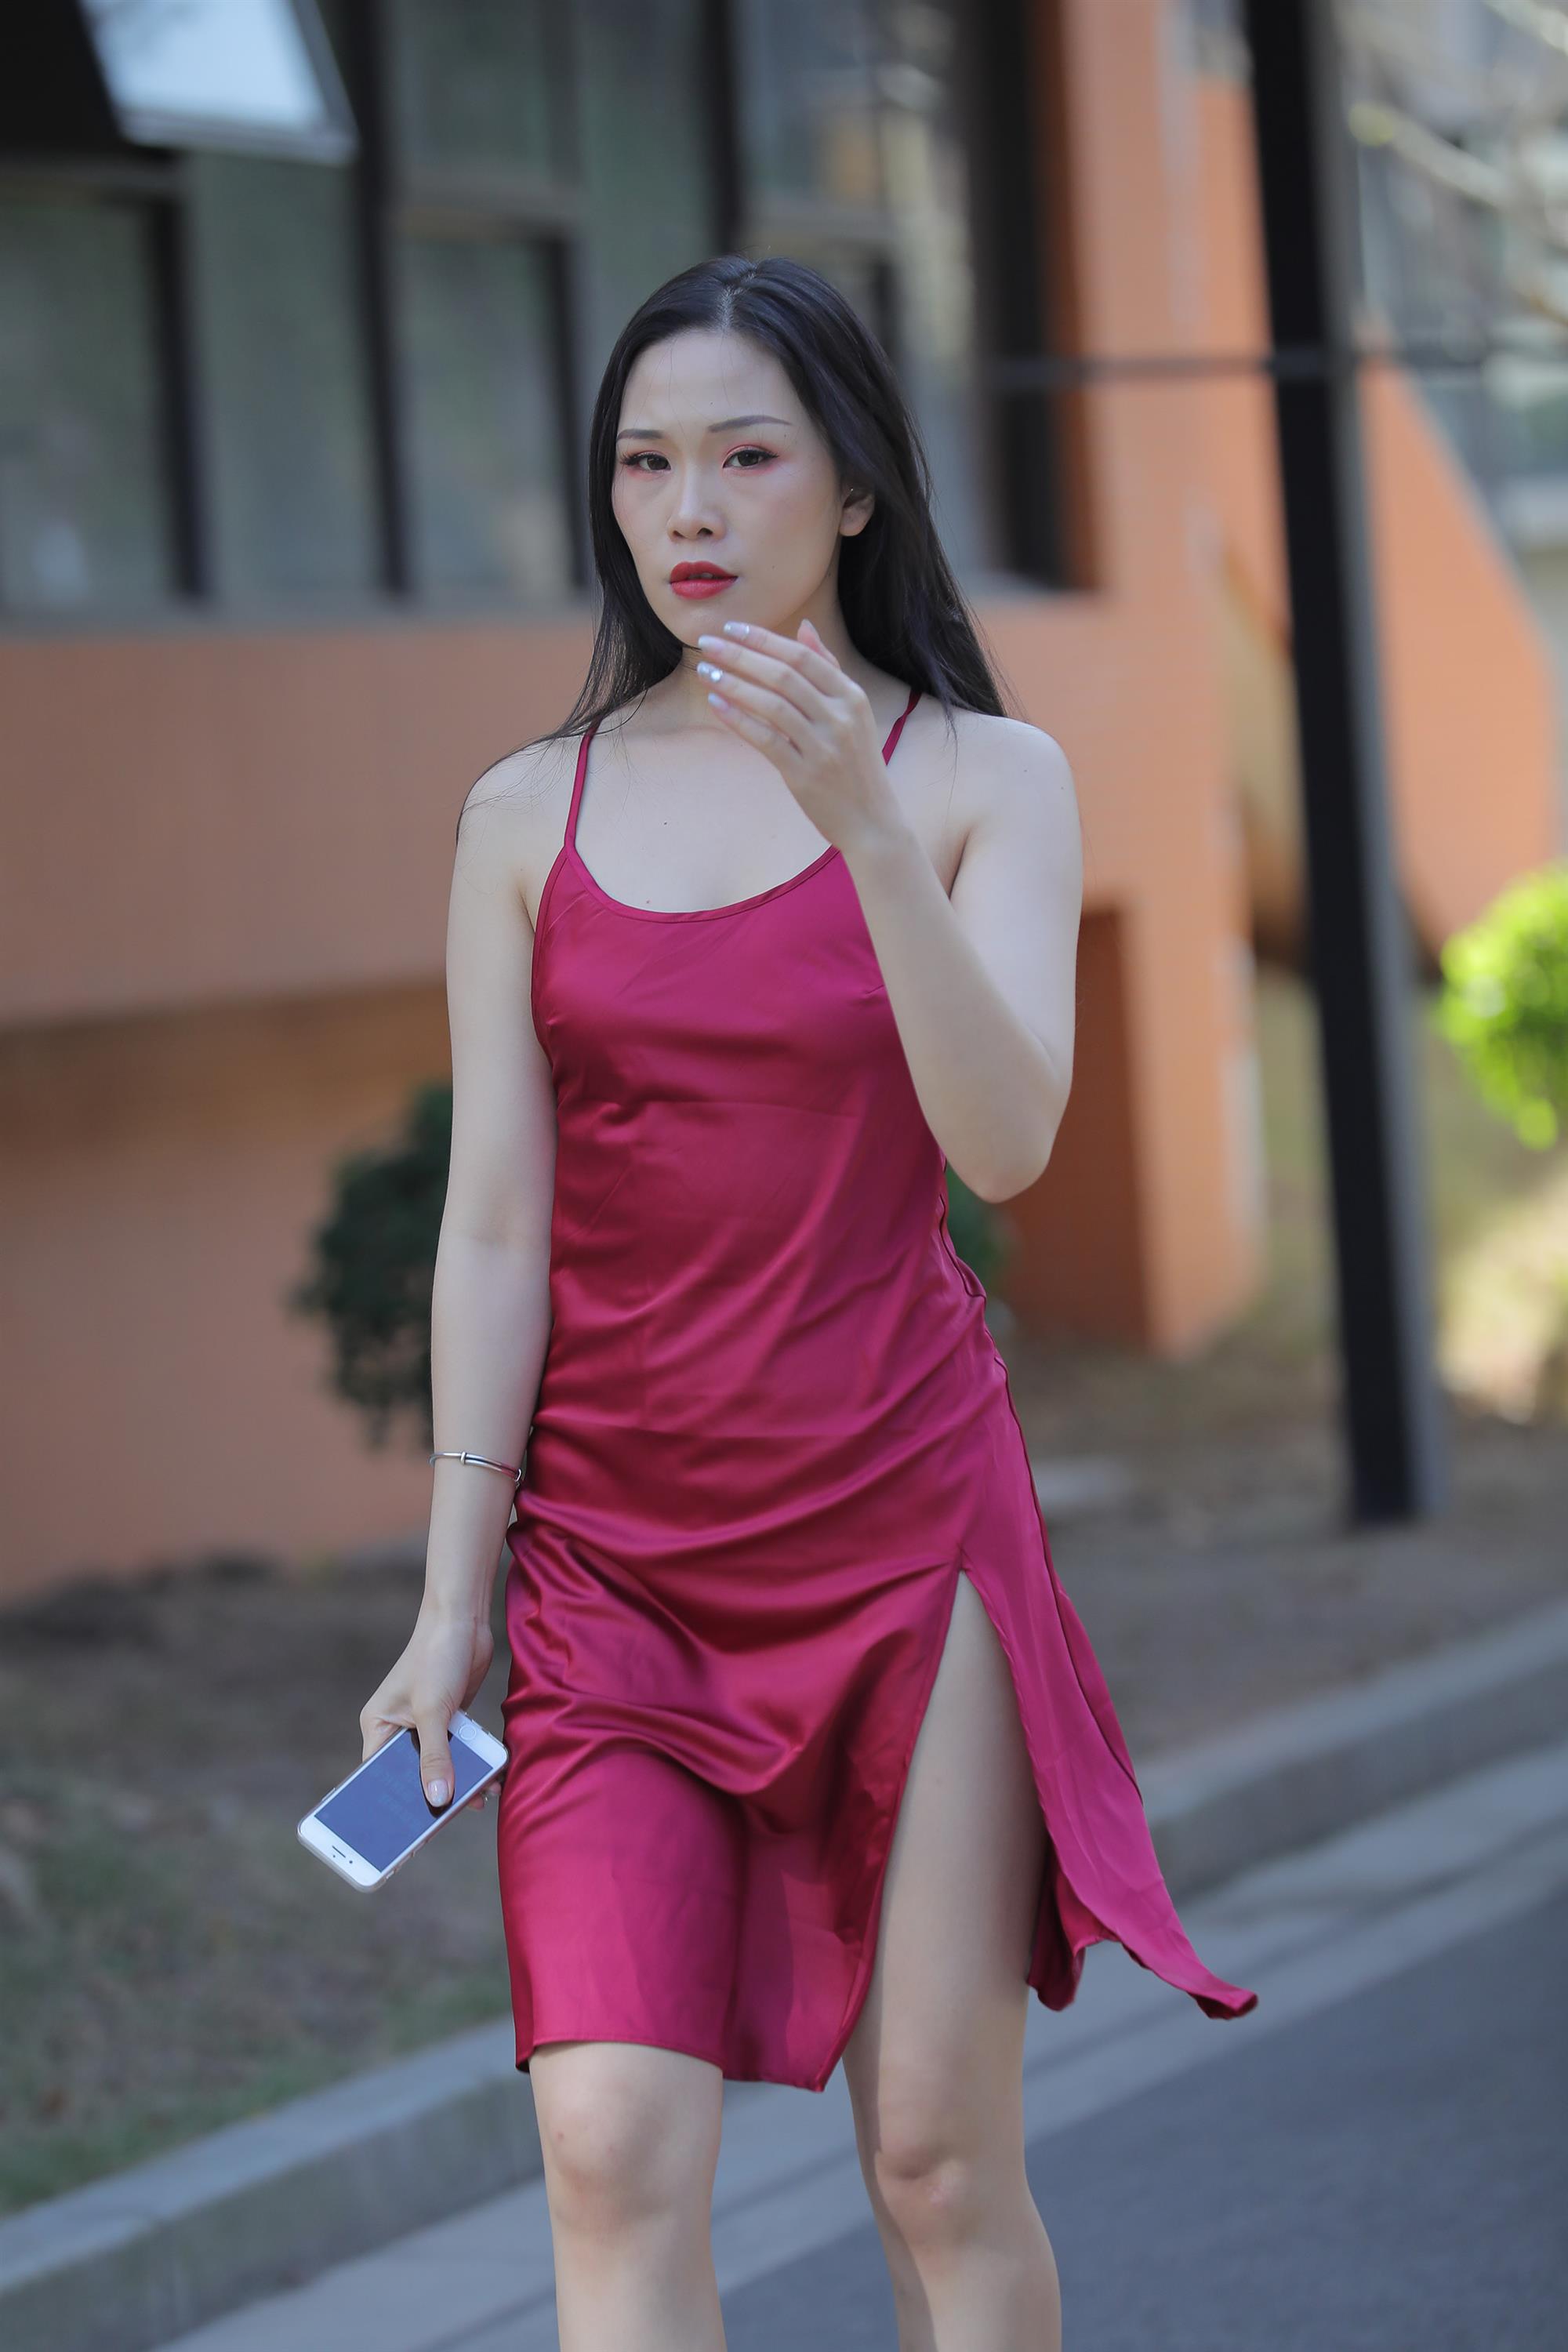 Street beauty in a red dress - 75.jpg